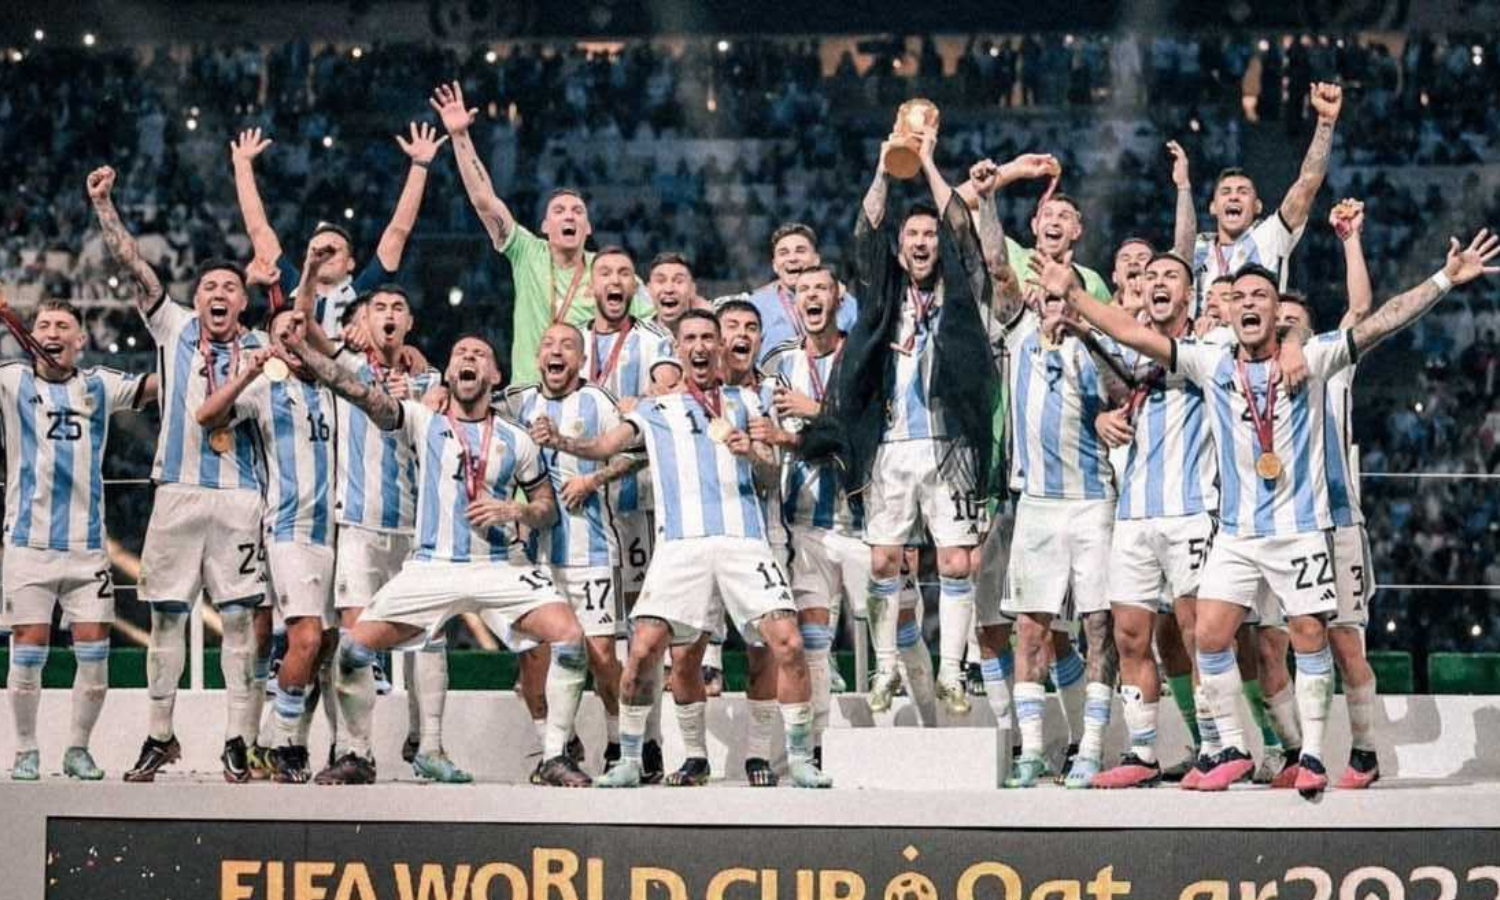 Federación Argentina de Fútbol confirma interés en jugar en Kerala: Ministro de Deportes